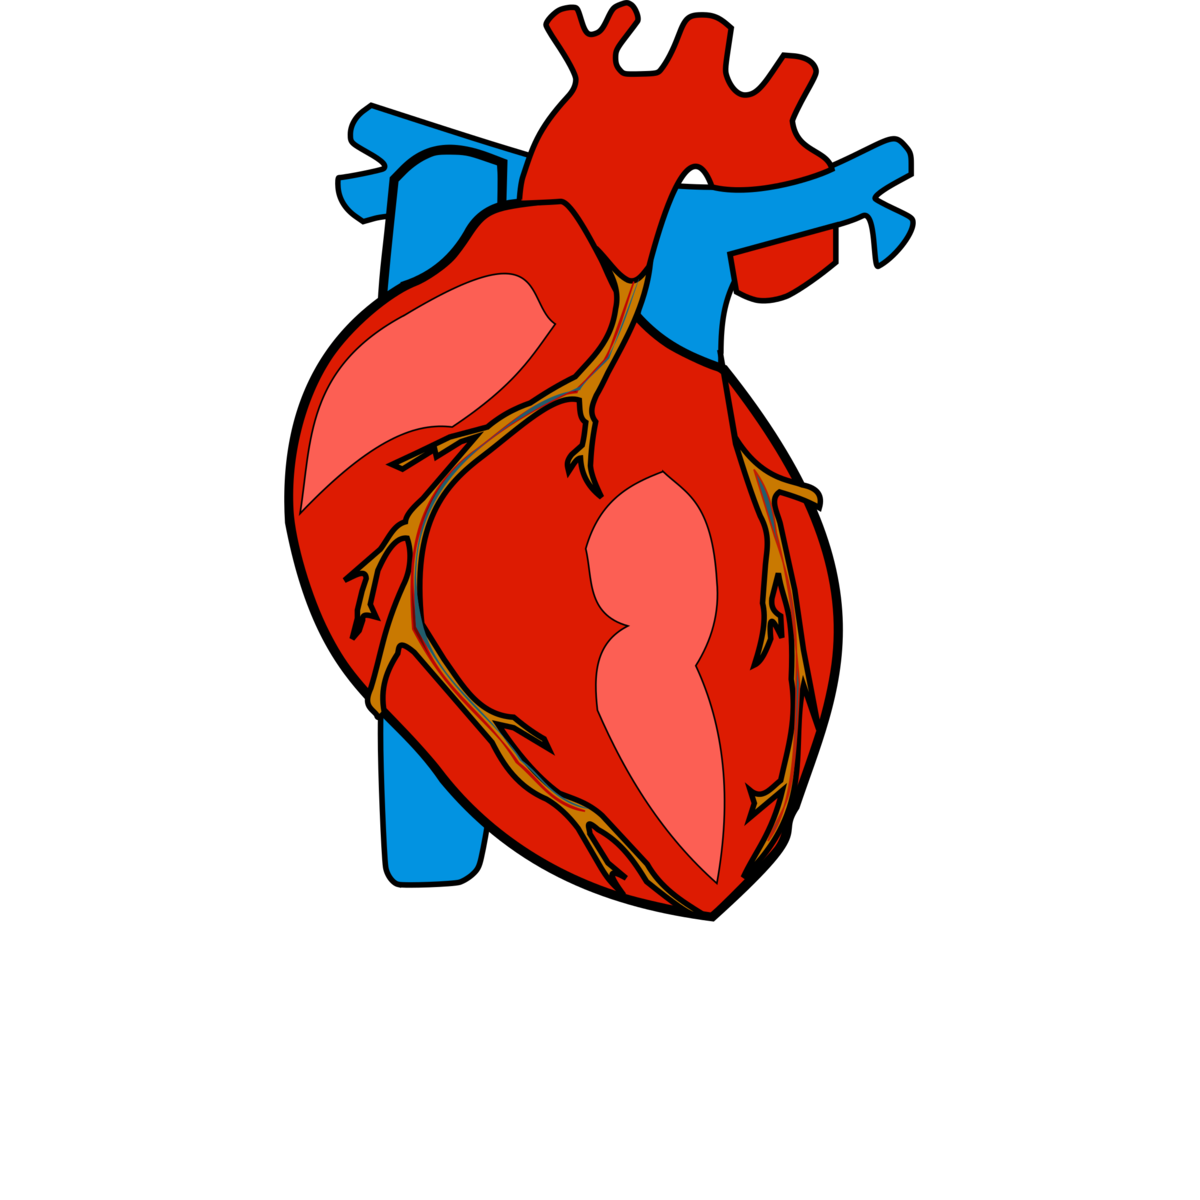 Орган сердце человека рисунок. Сердце человека вектор. Человеческое сердце на прозрачном фоне.